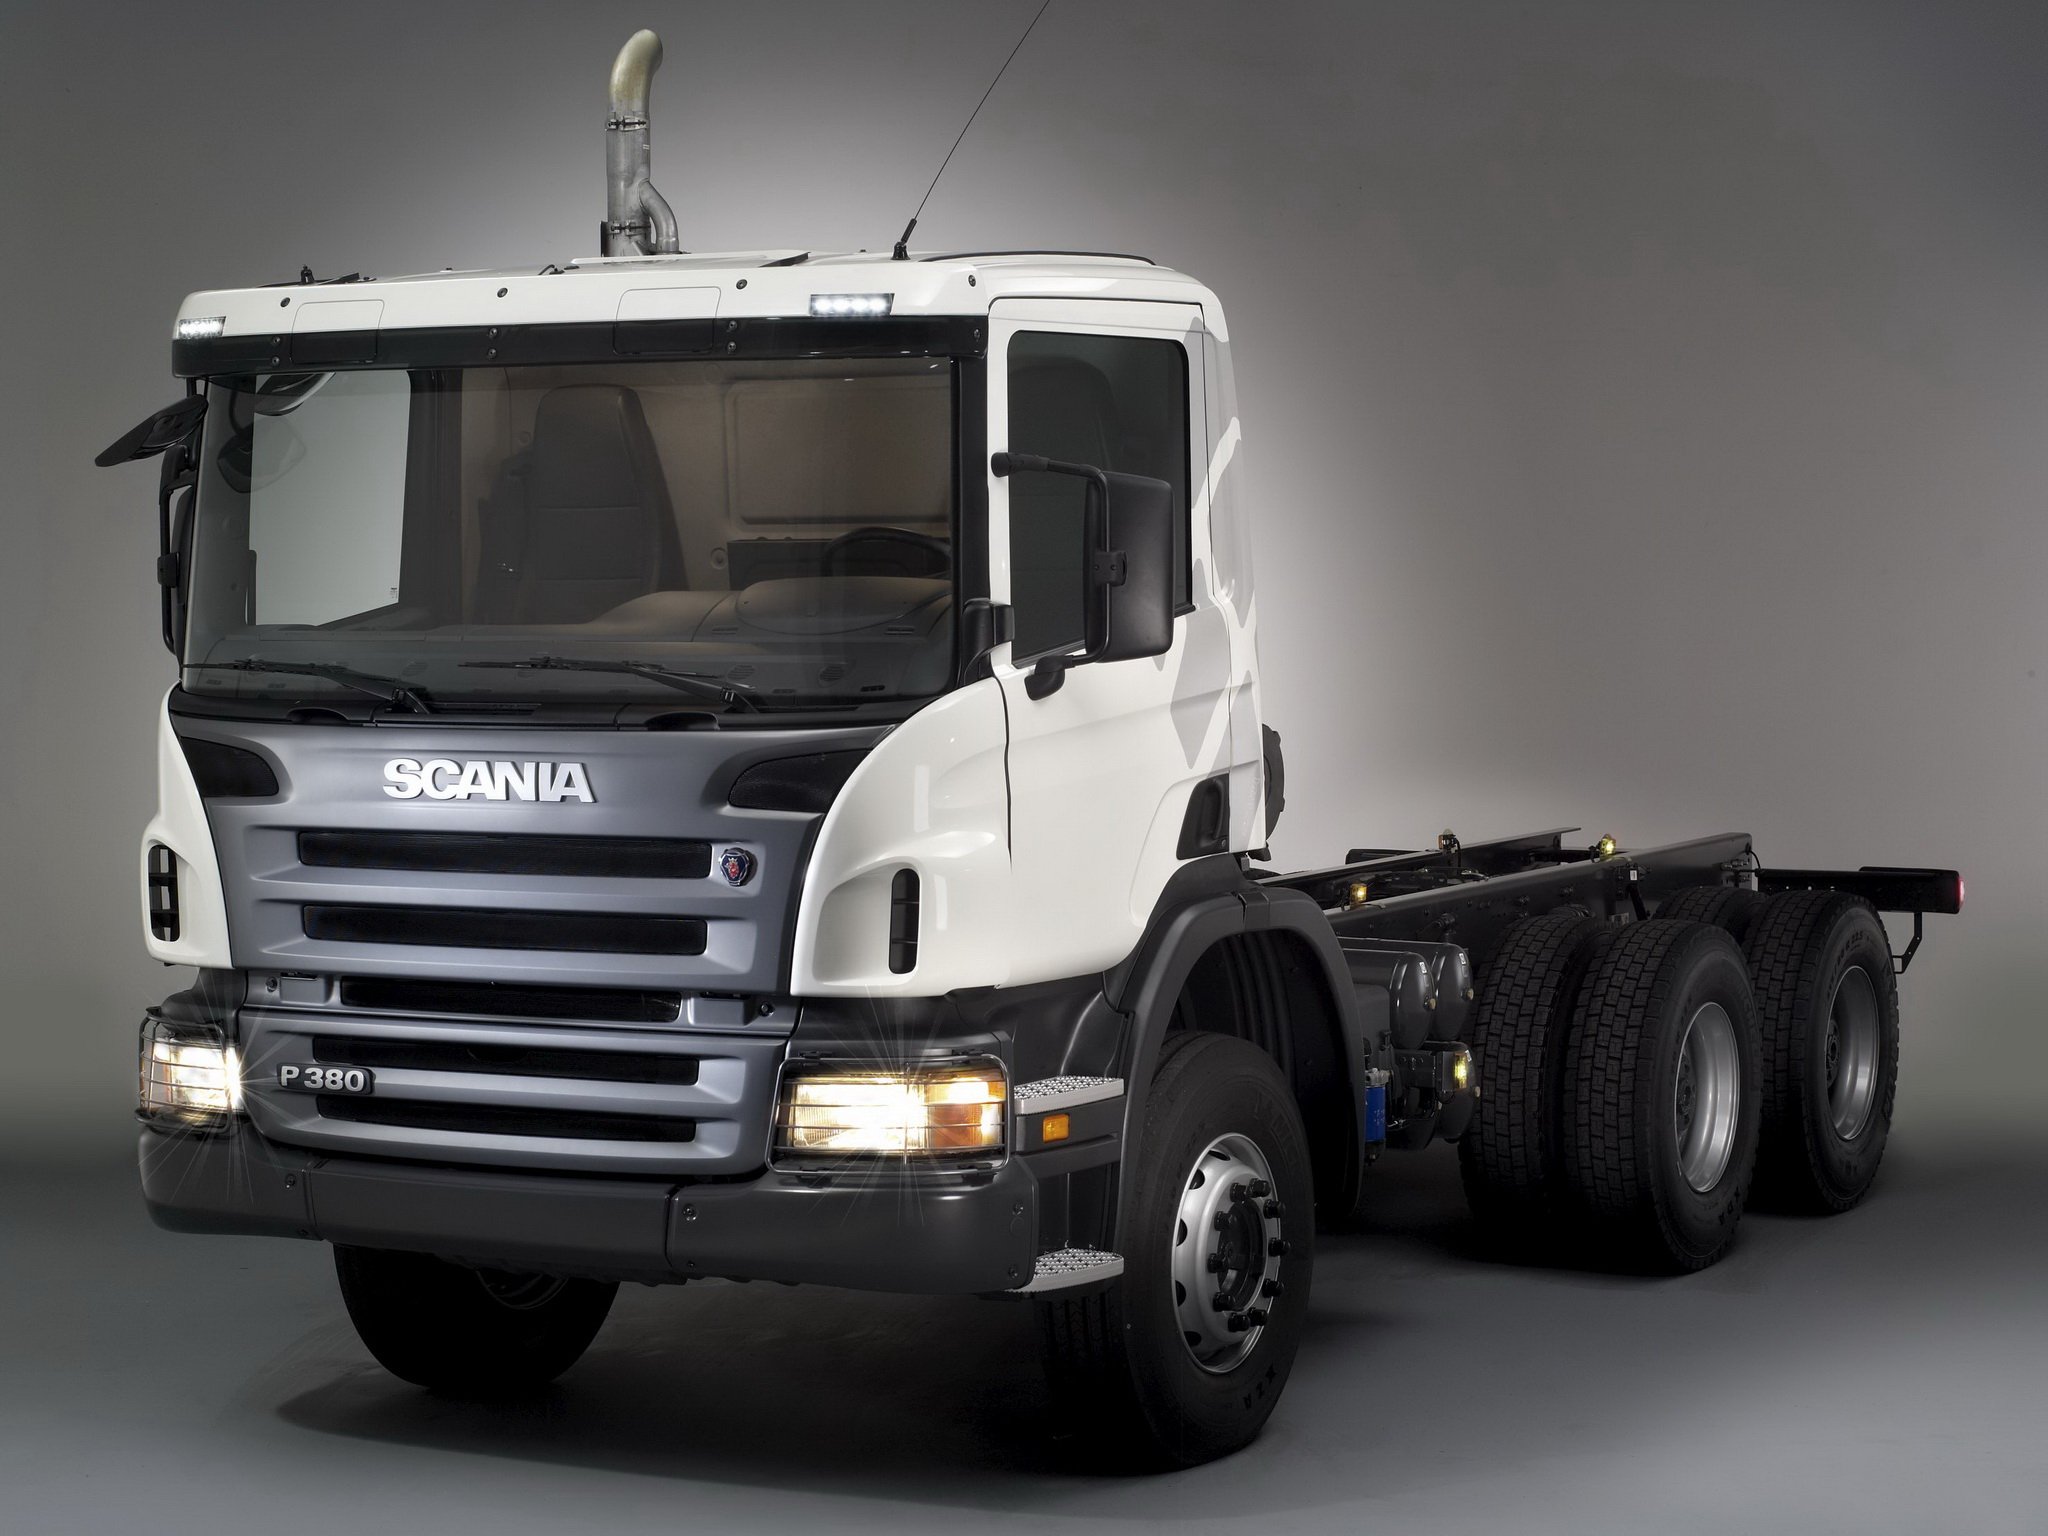 Scania p series. Scania p380. Scania p380 6x4. Scania p380 6x4 тягач. Scania p380 грузовик.